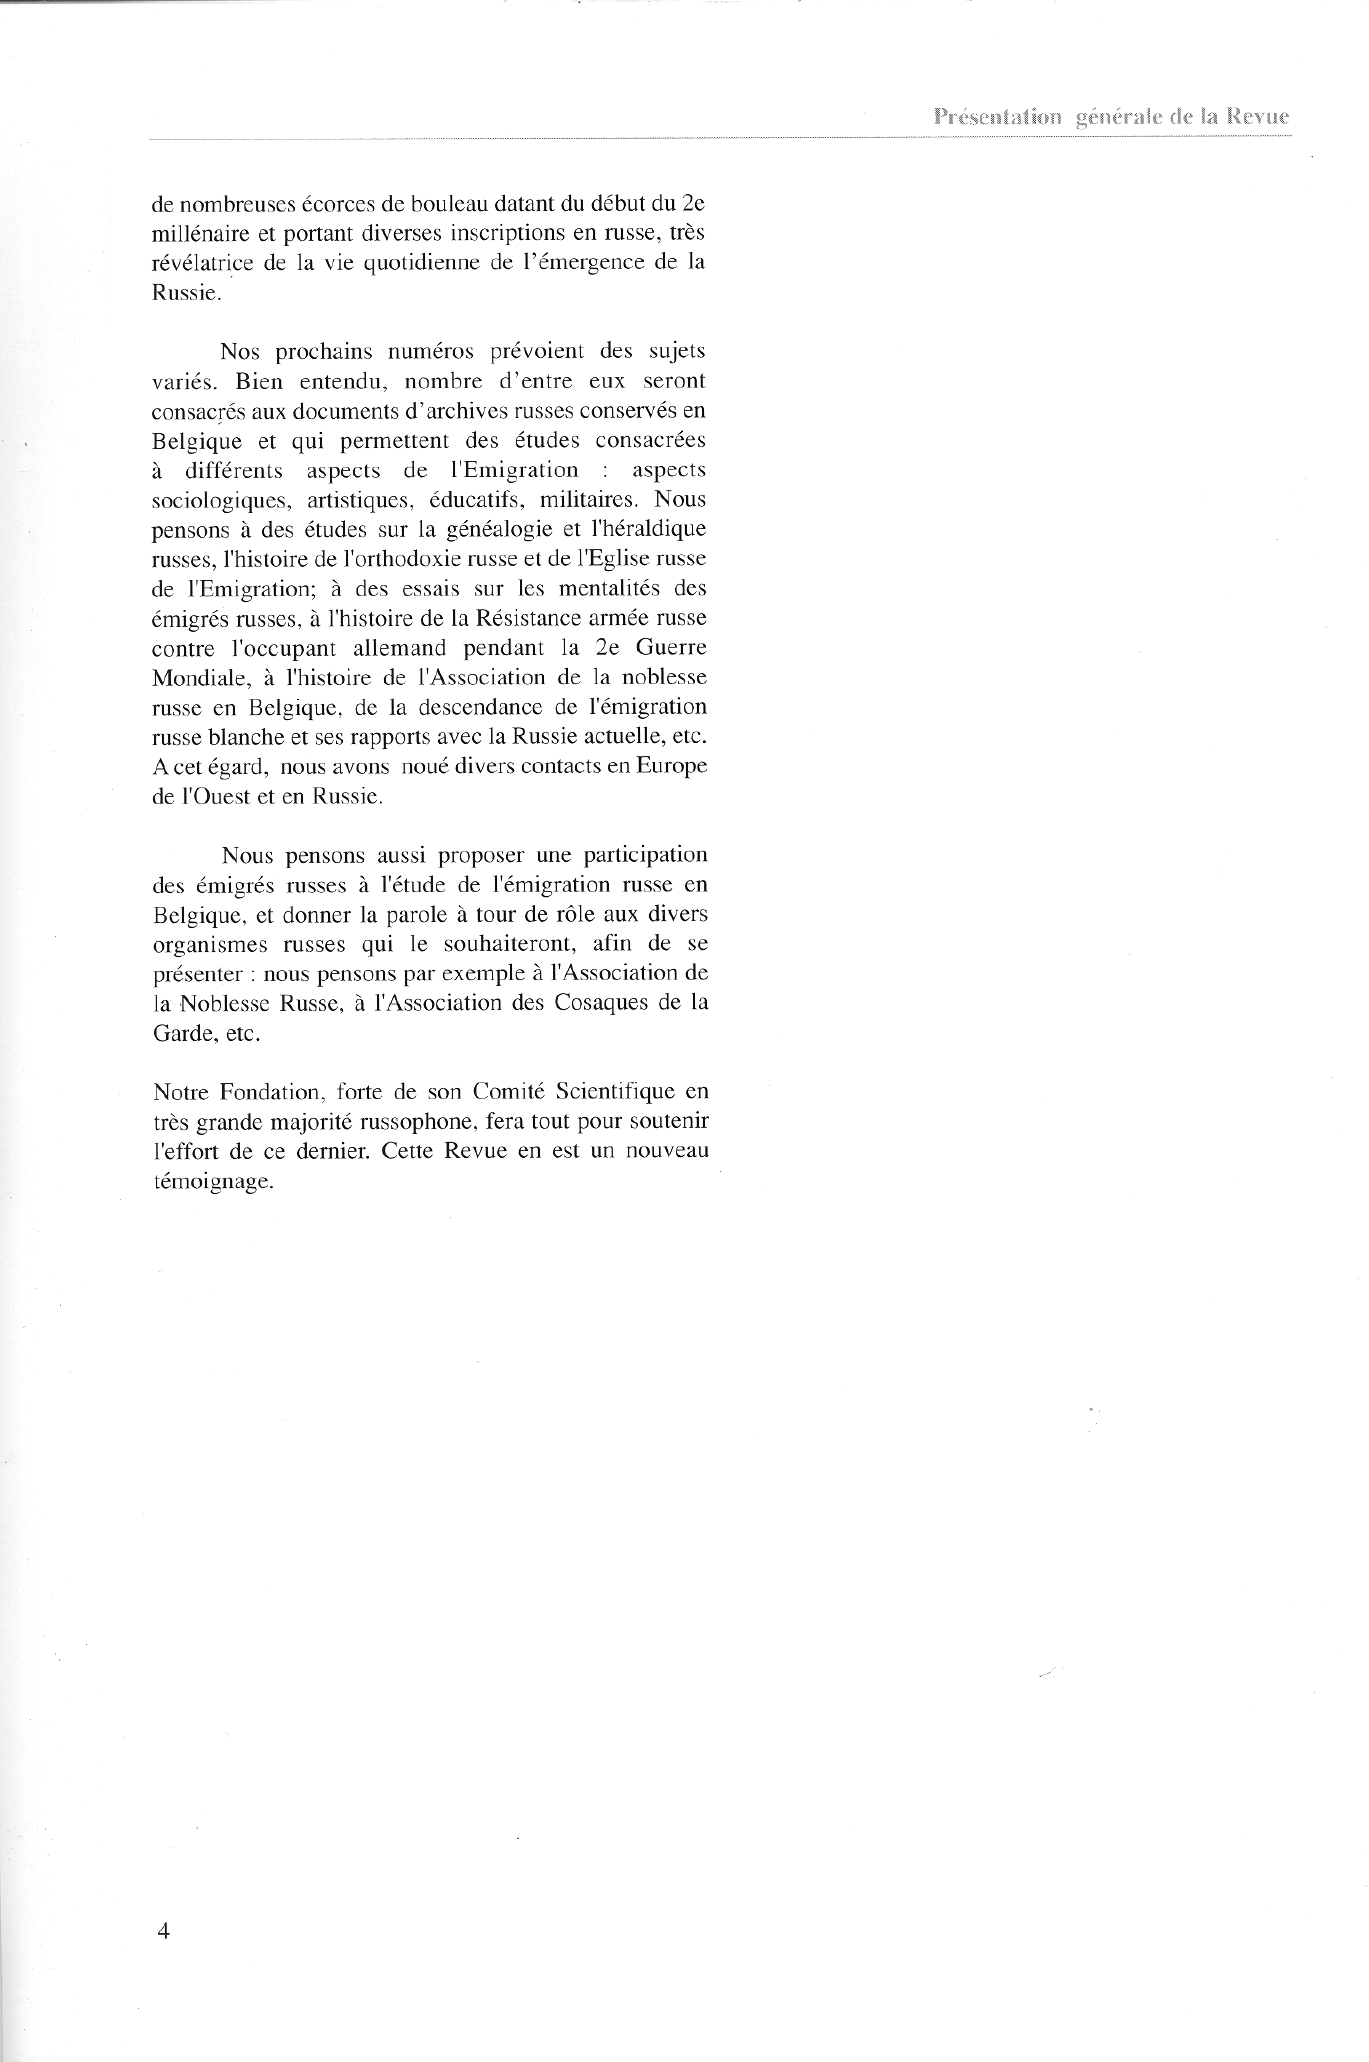 FPPR Revue 01 2002 06. Page 04. Présentation générale de la revue par Daniel Stevens. Président de la Fondation